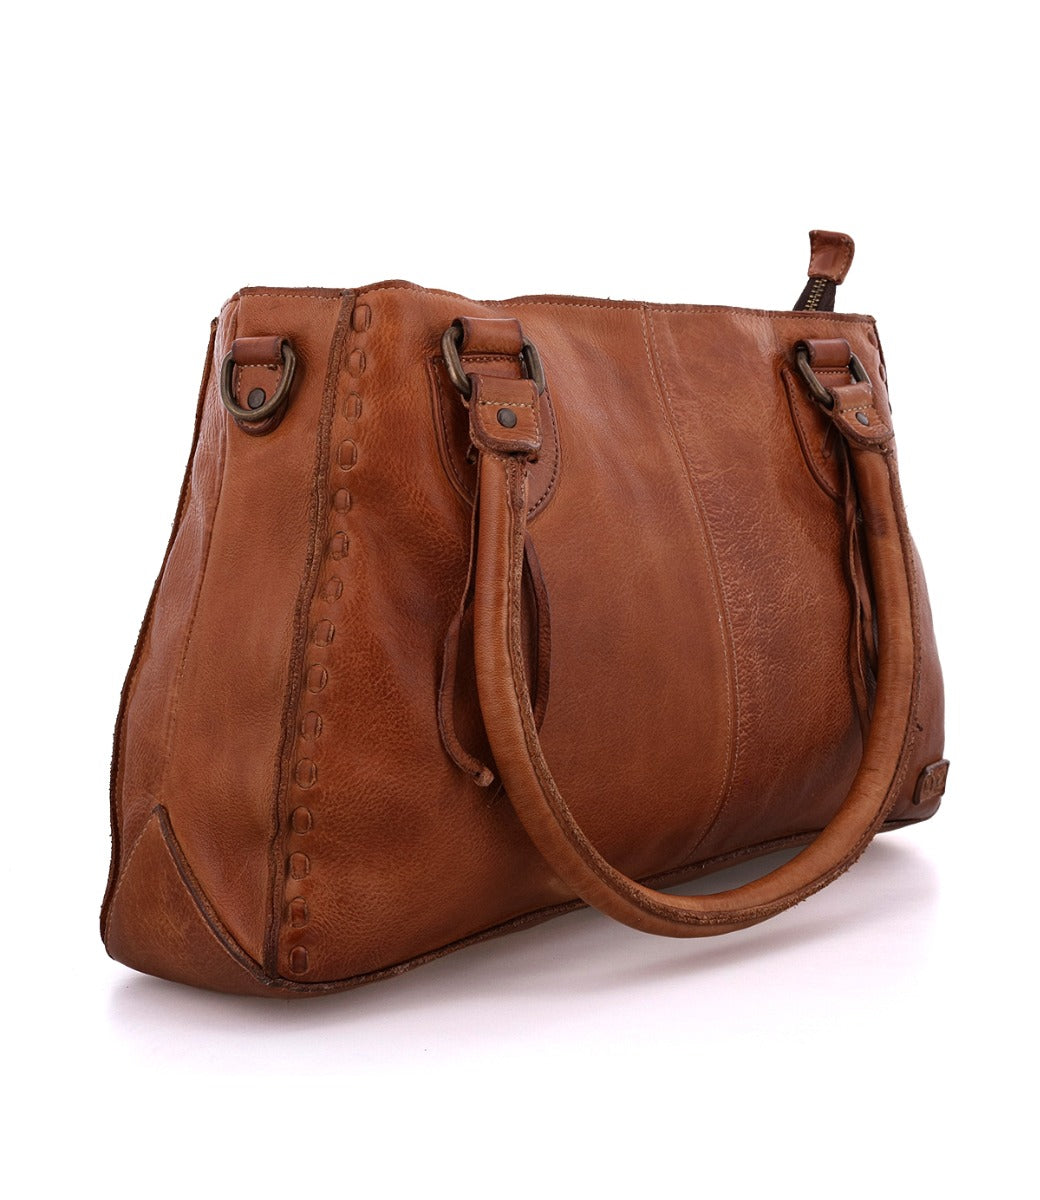 A Rockababy tan leather handbag with a handle.